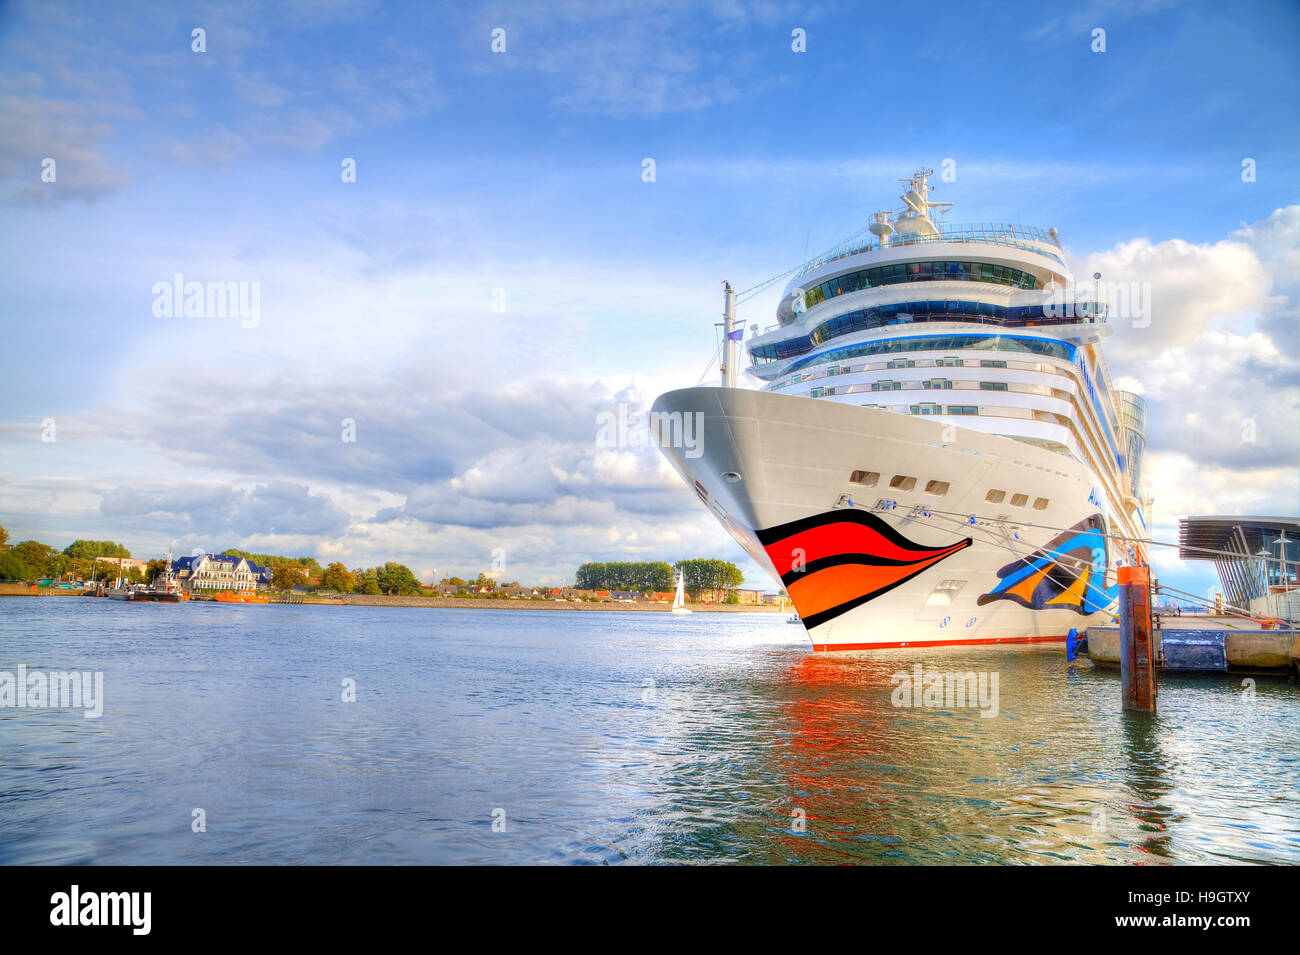 WARNEMÜNDE / Deutschland - 21. September 2013: Kreuzfahrtschiff von AIDA liegt im Hafen Warnemünde / Deutschland. AIDA Cruises ist ein amerikanisch-britischen Besitz Ger Stockfoto